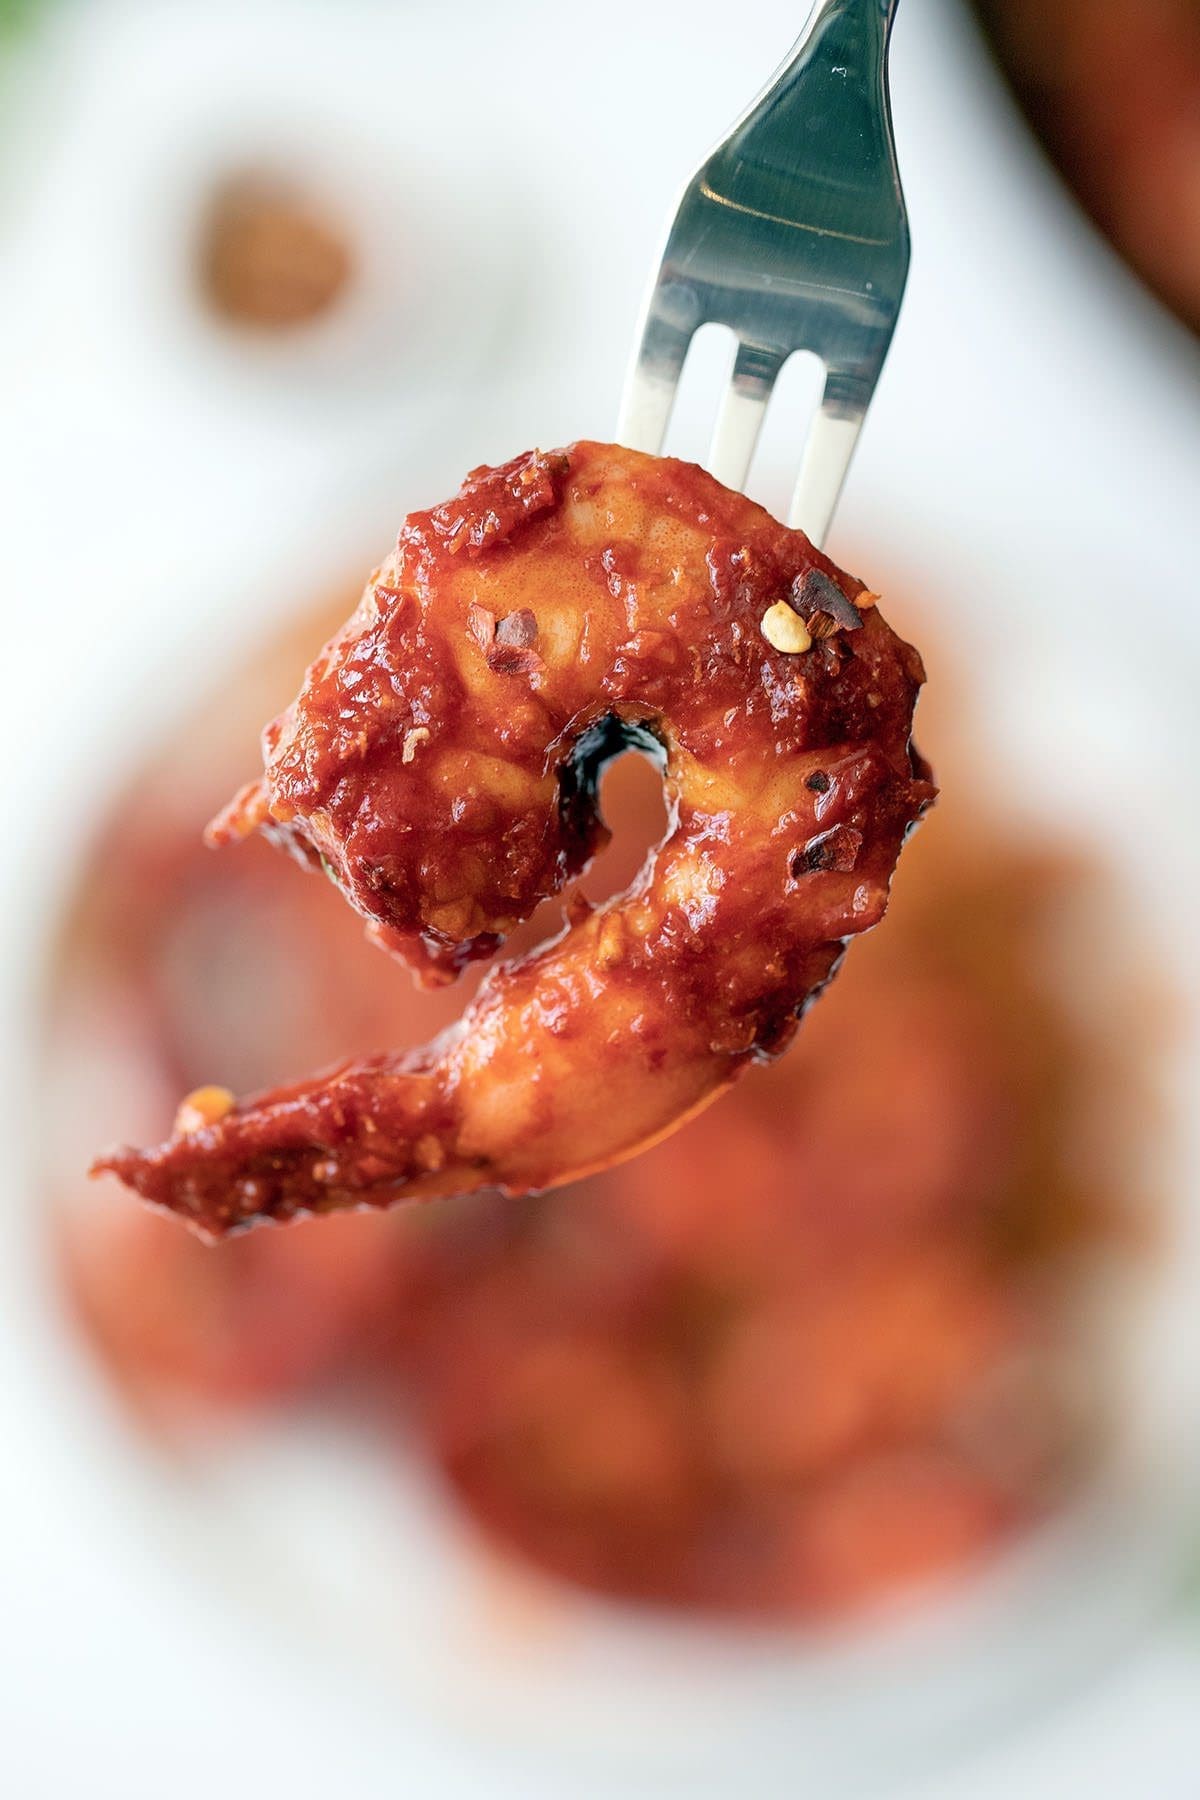 Deviled shrimp on a fork.